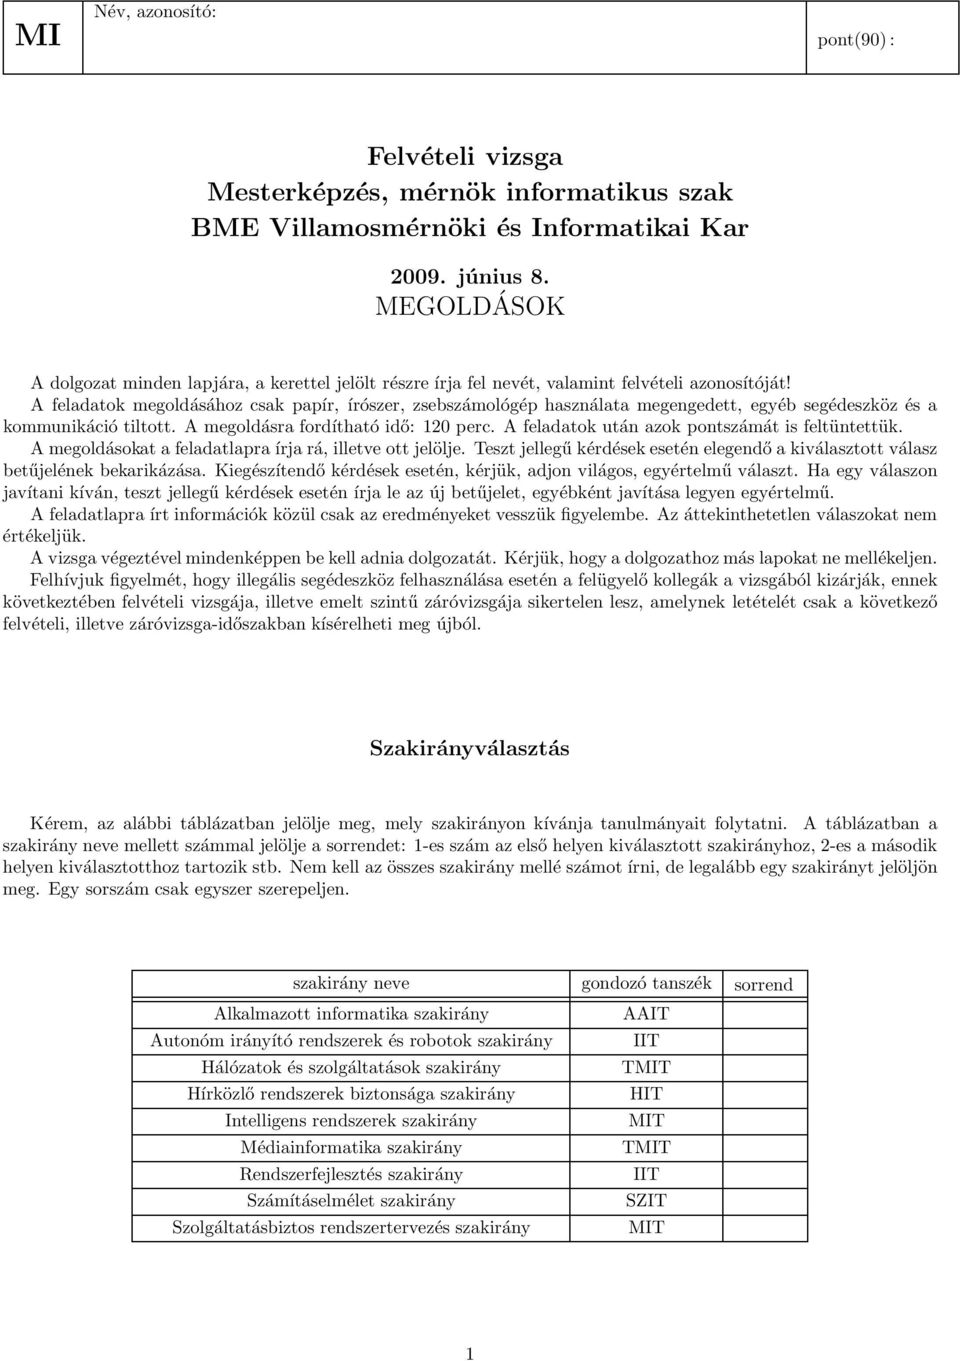 Felvételi vizsga Mesterképzés, mérnök informatikus szak BME Villamosmérnöki  és Informatikai Kar - PDF Ingyenes letöltés